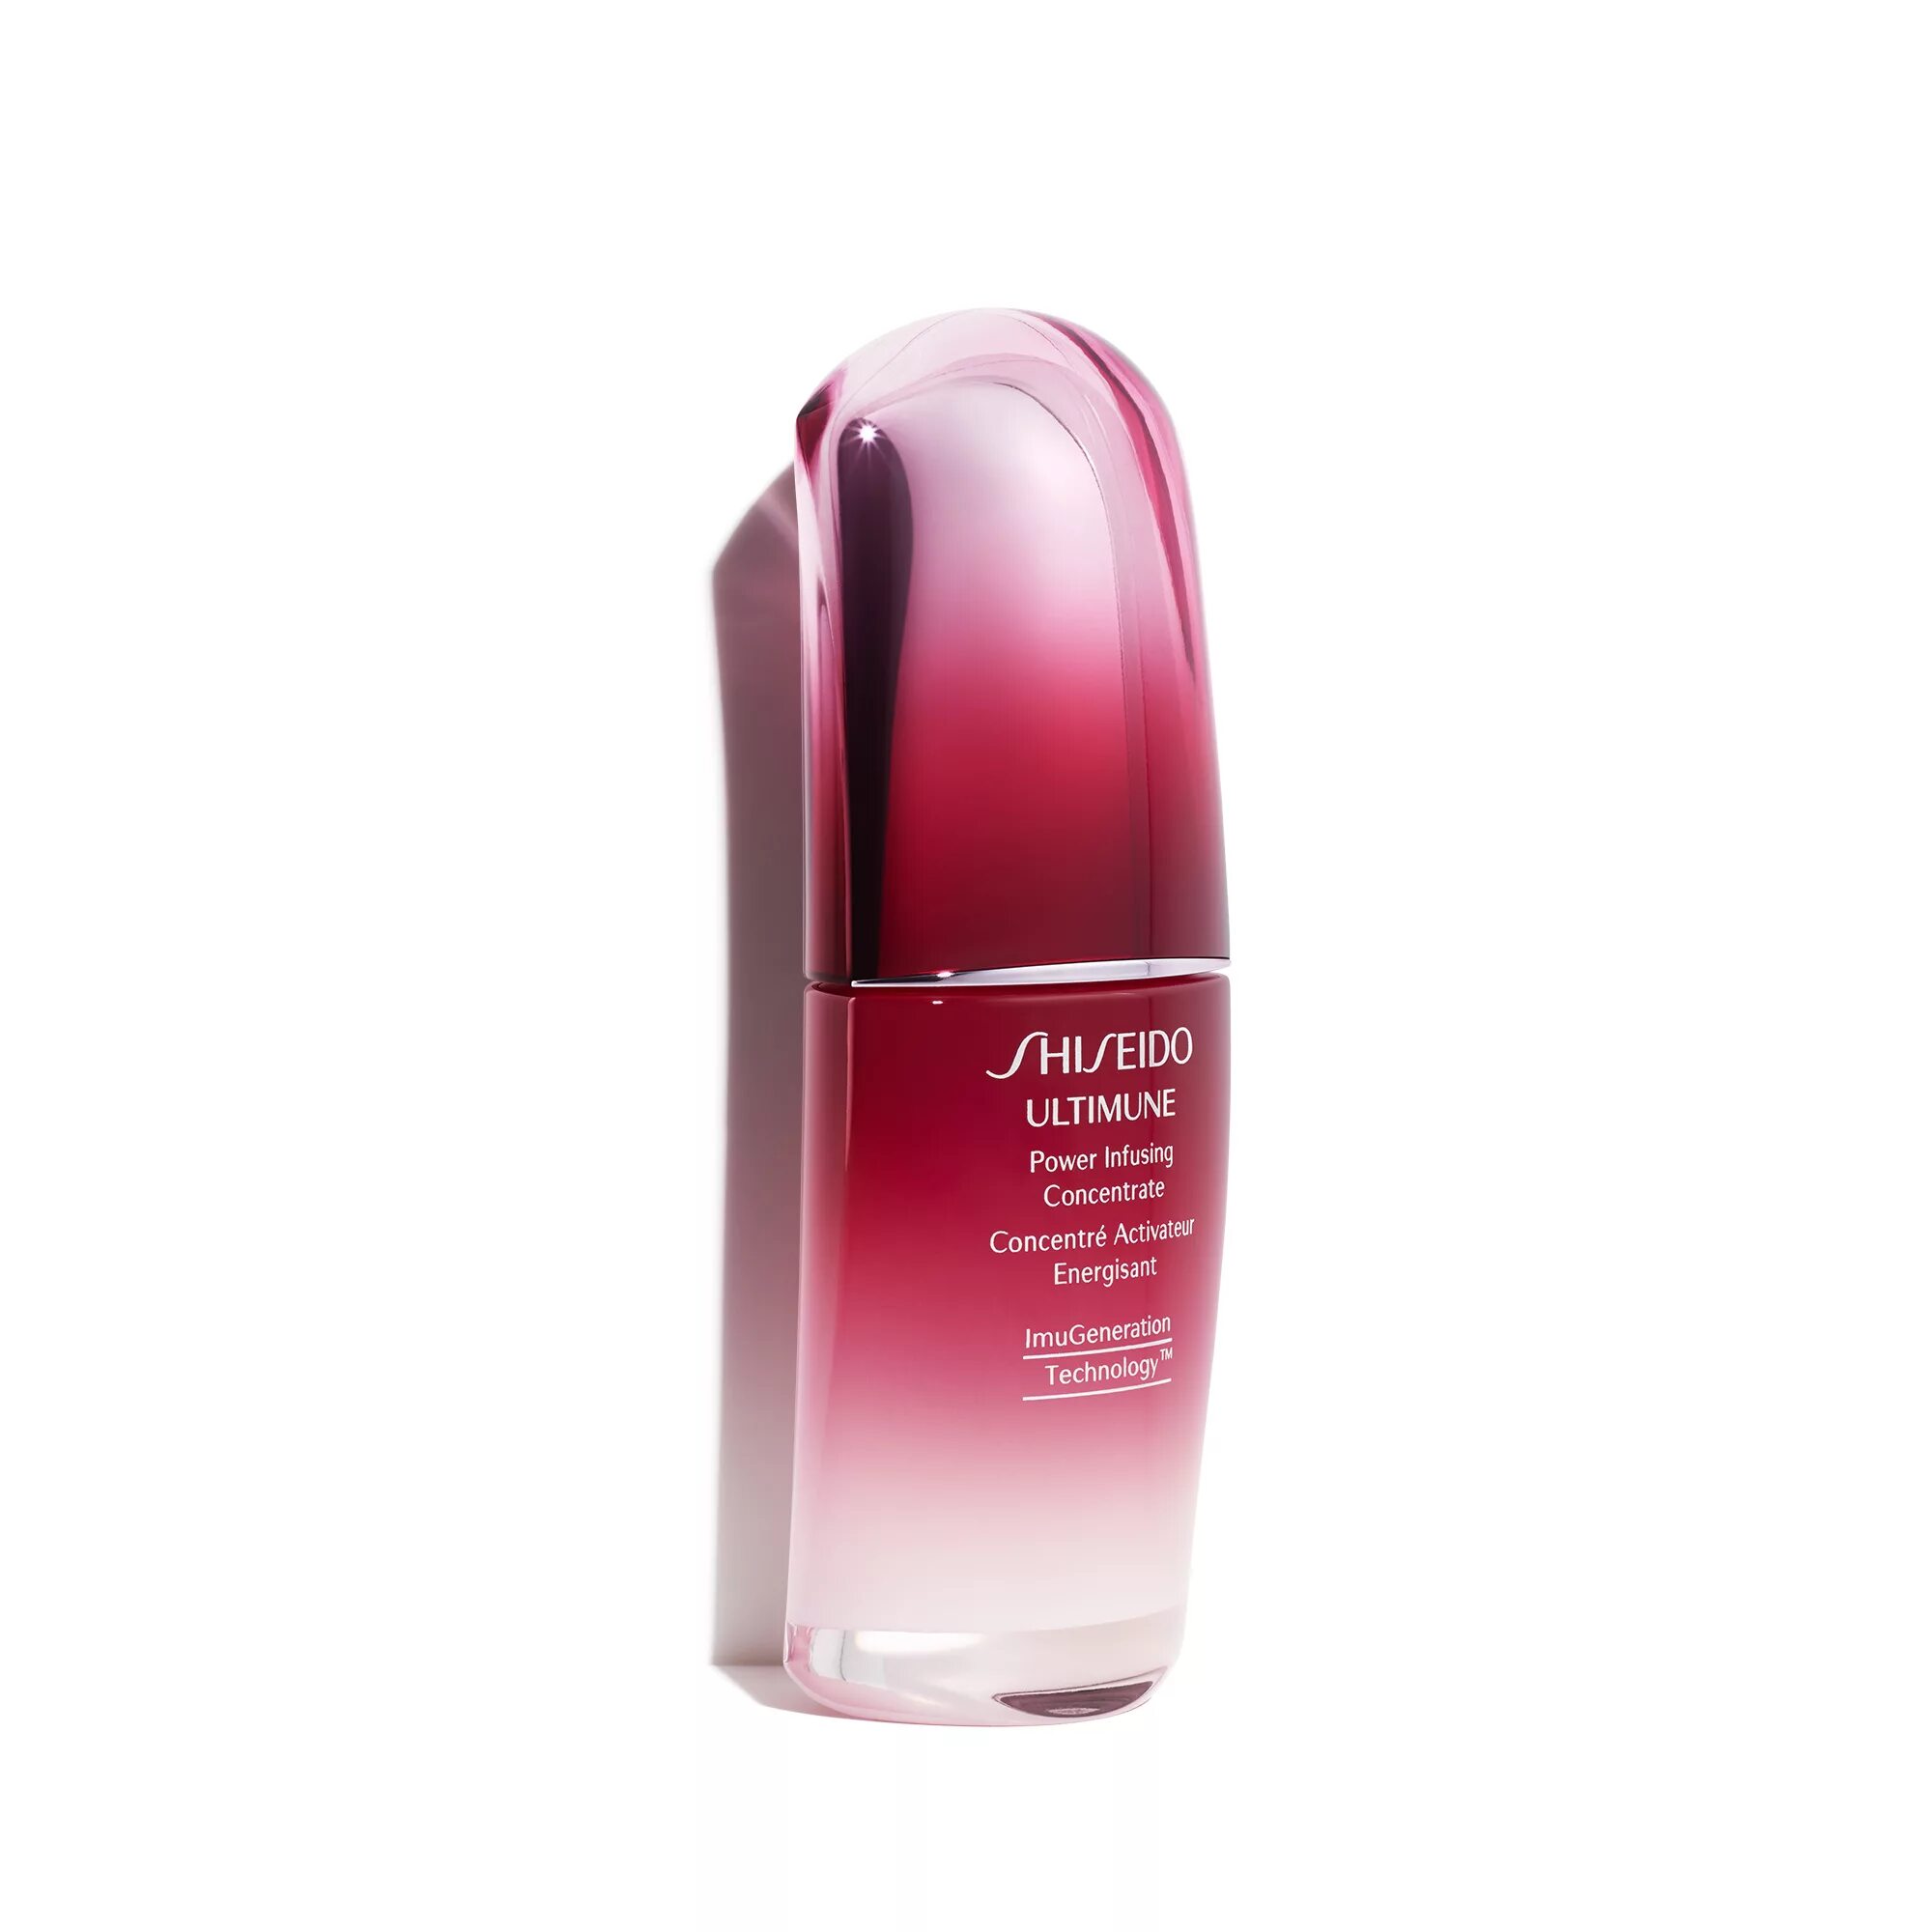 Ультимьюн шисейдо. Shiseido флюид 50. Шисейдо 130. Shiseido Ultimune Power infusing Serum.